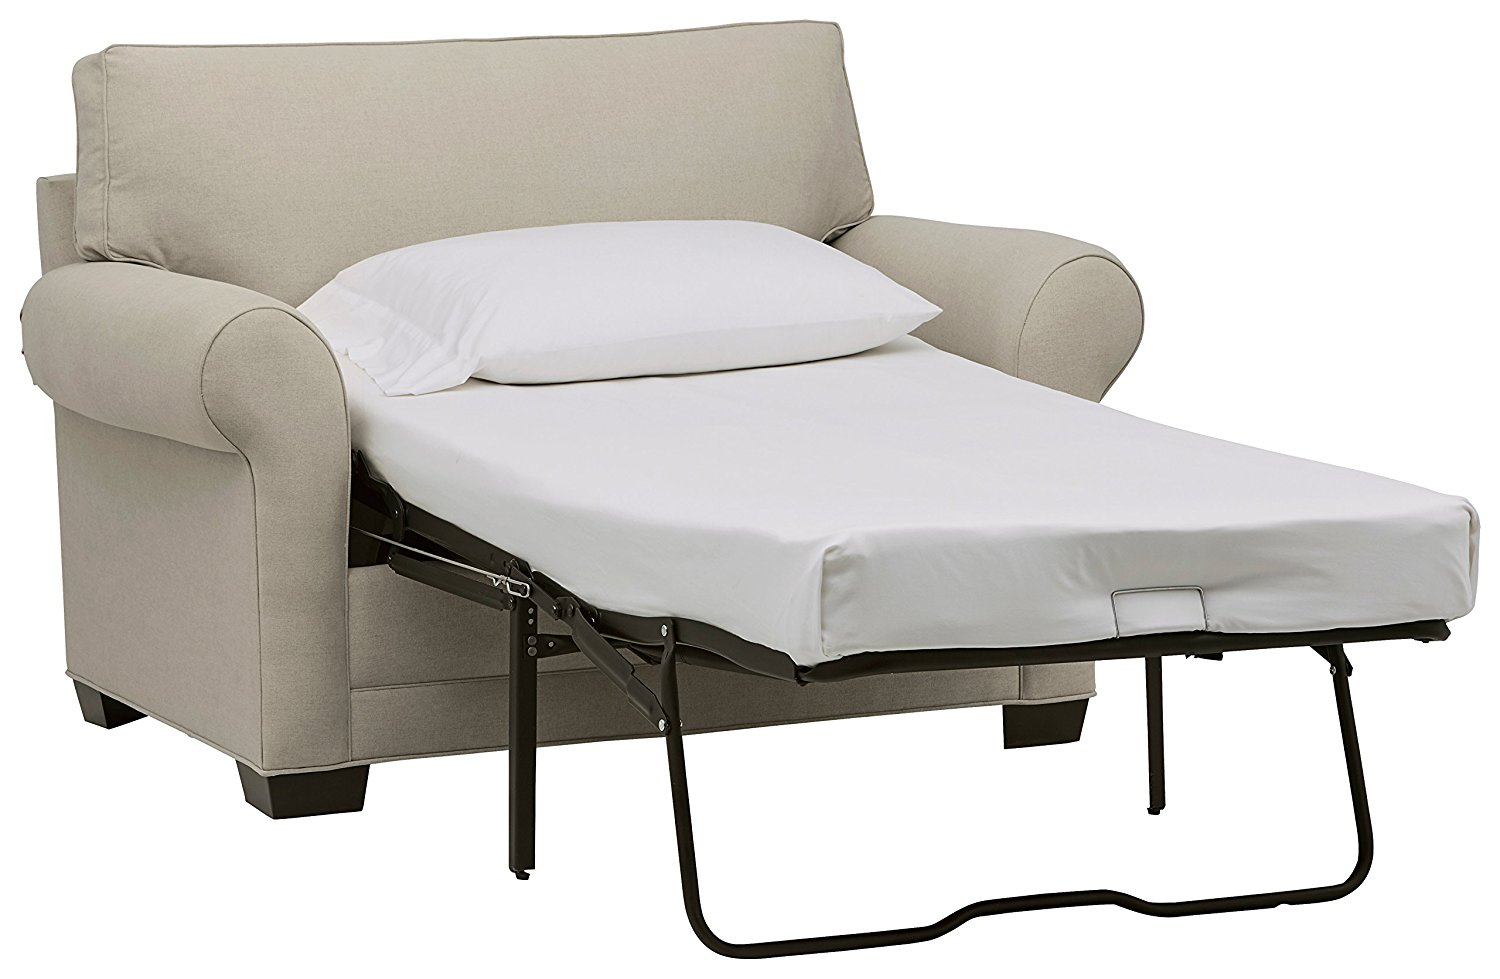 30x65 sleeper chair mattress